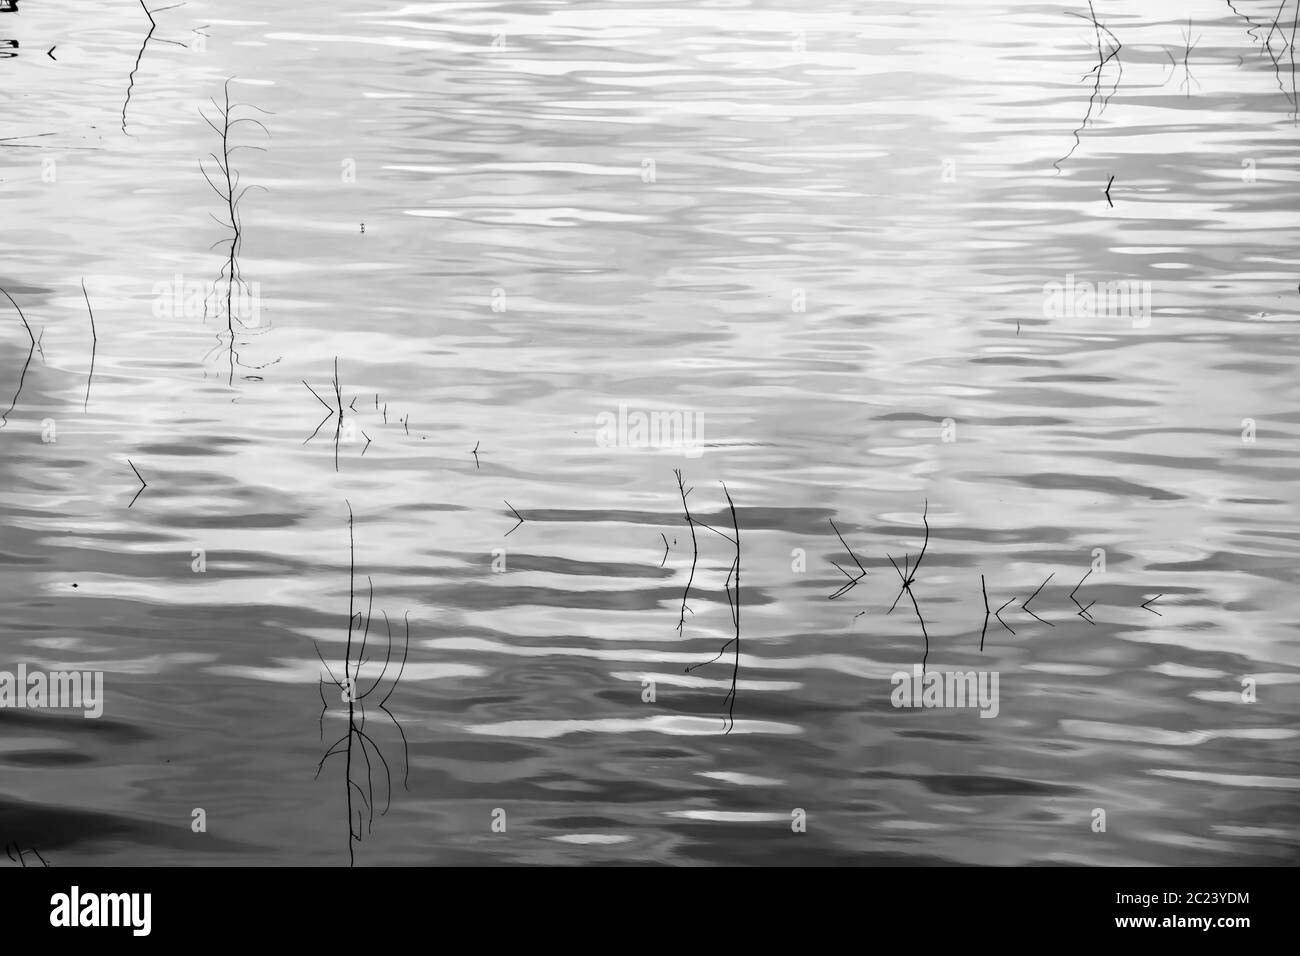 De l'herbe sèche dans la rivière silhouette, détail de Reed dans l'étang en noir et blanc à contraste élevé Banque D'Images